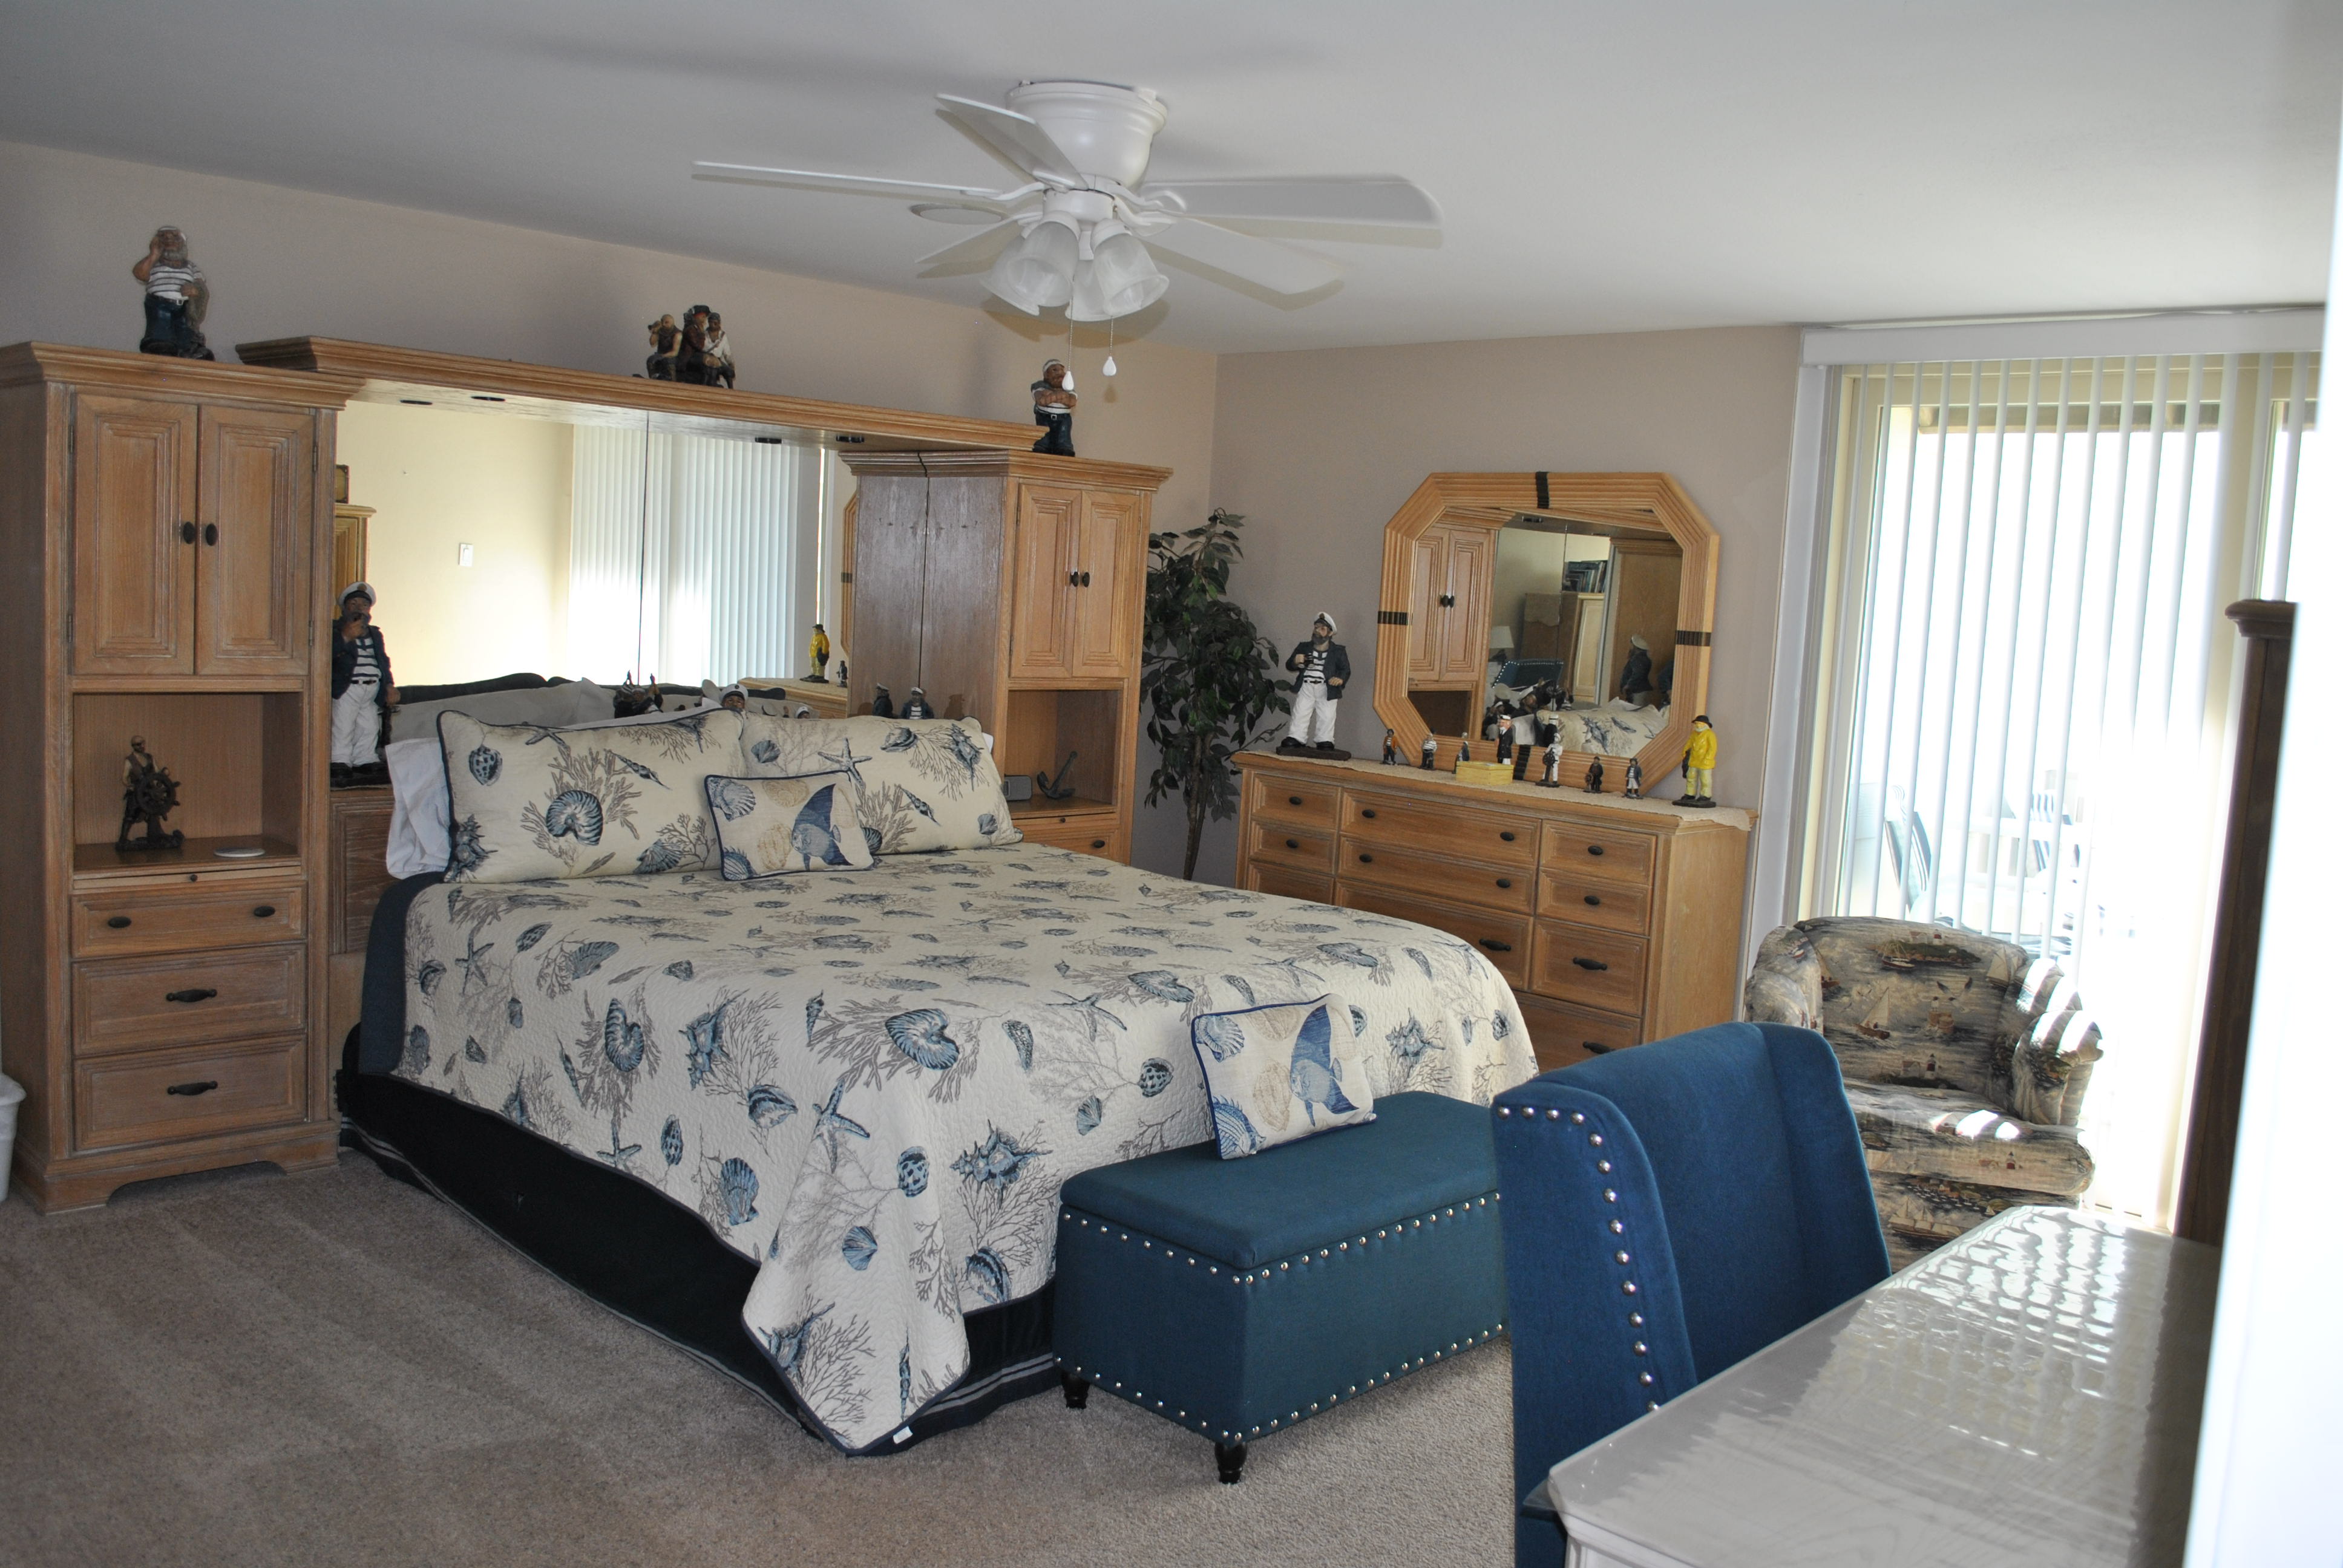 3 bedroom condo rentals South Padre Island